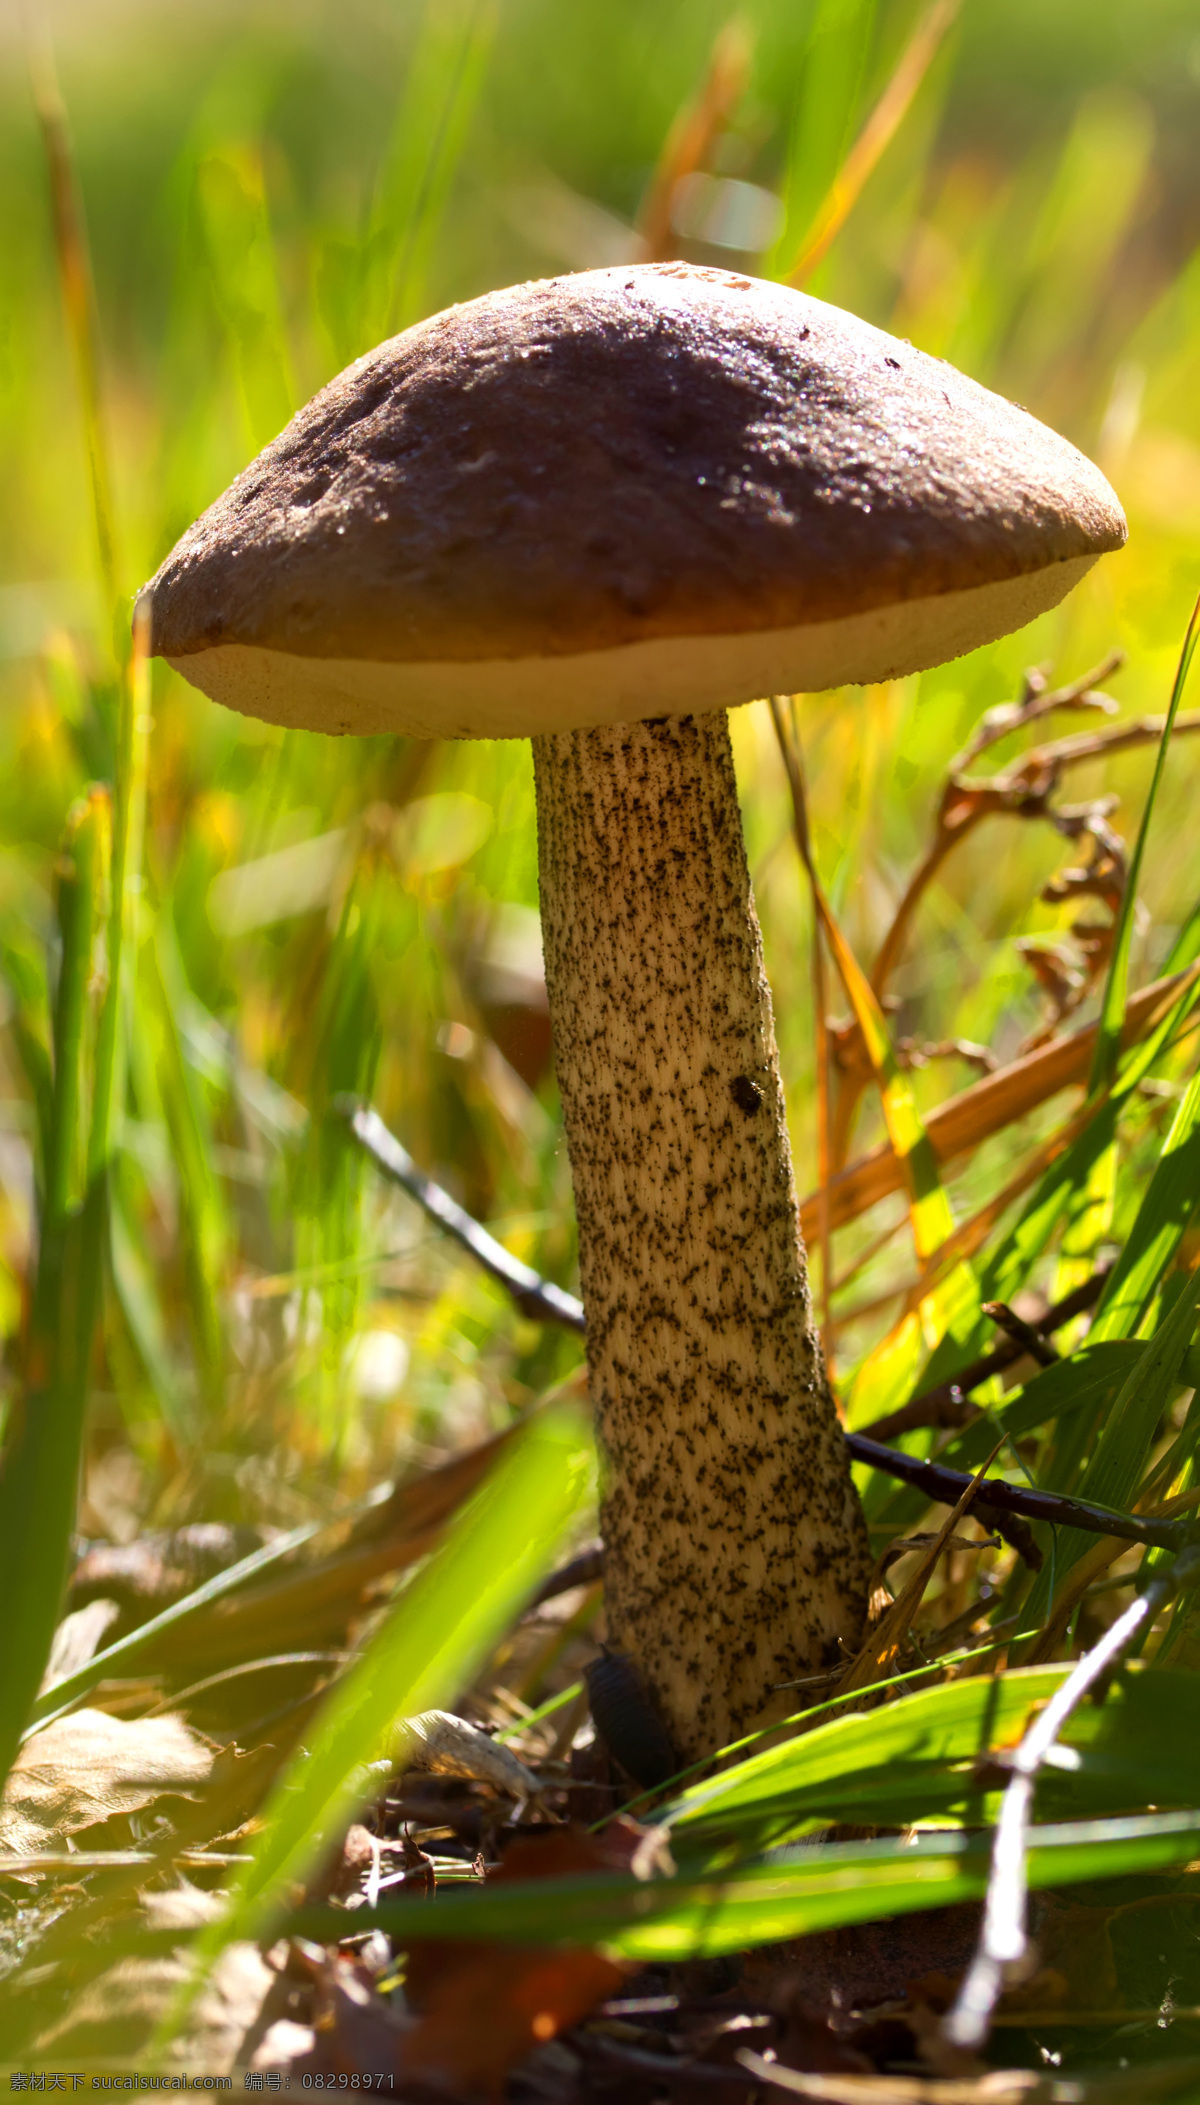 蘑菇 菌类植物 真菌 菌子 伞菌科 野生蘑菇 野生菌 蘑菇菌 菌类 植物 蘑菇素材 其他生物 生物世界